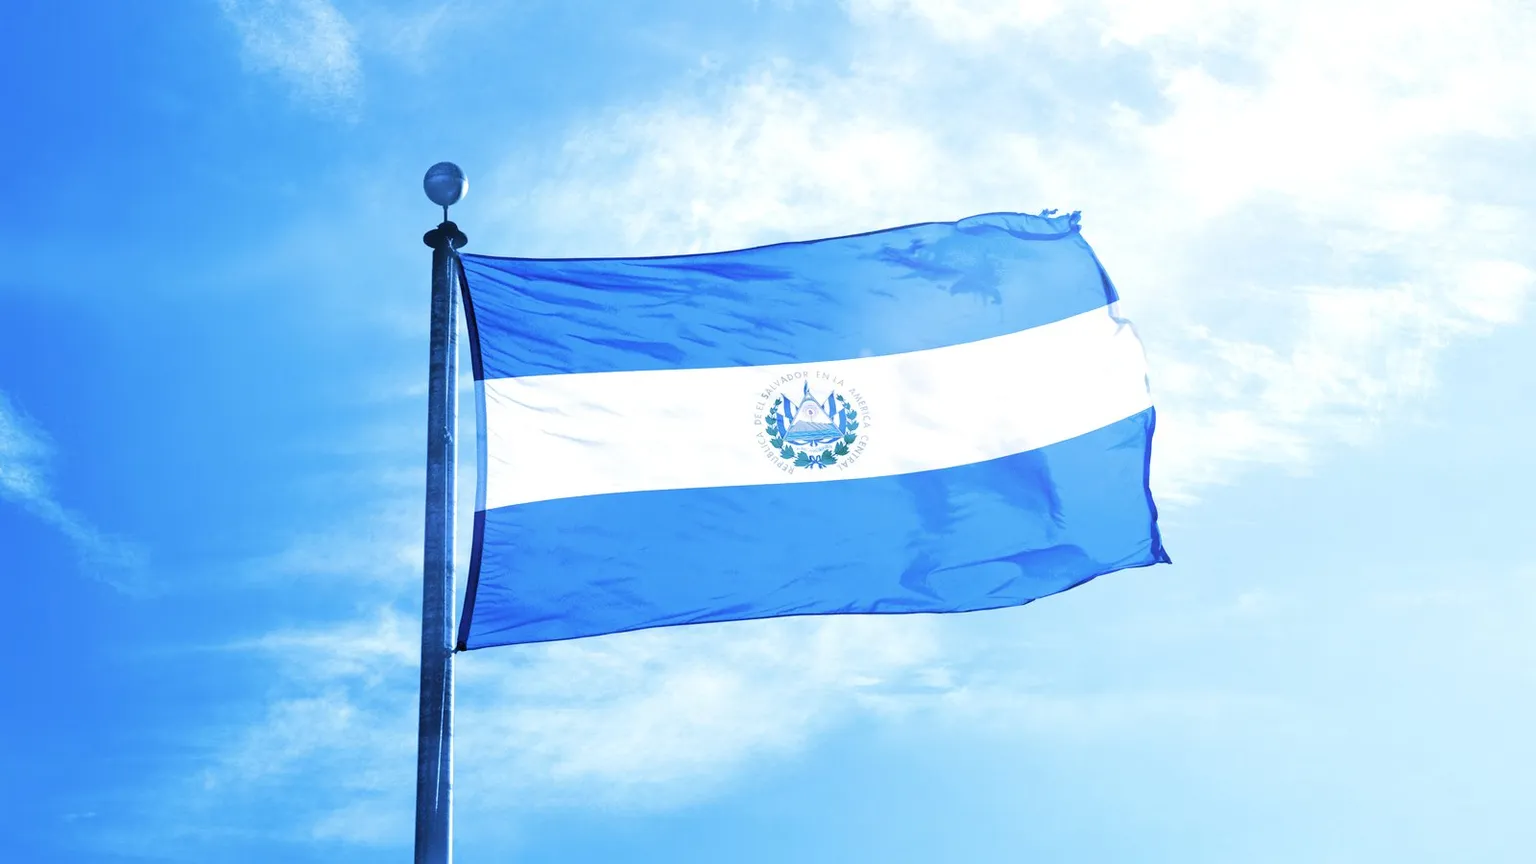 El Salvador Flag on the mast. Image: Shutterstock